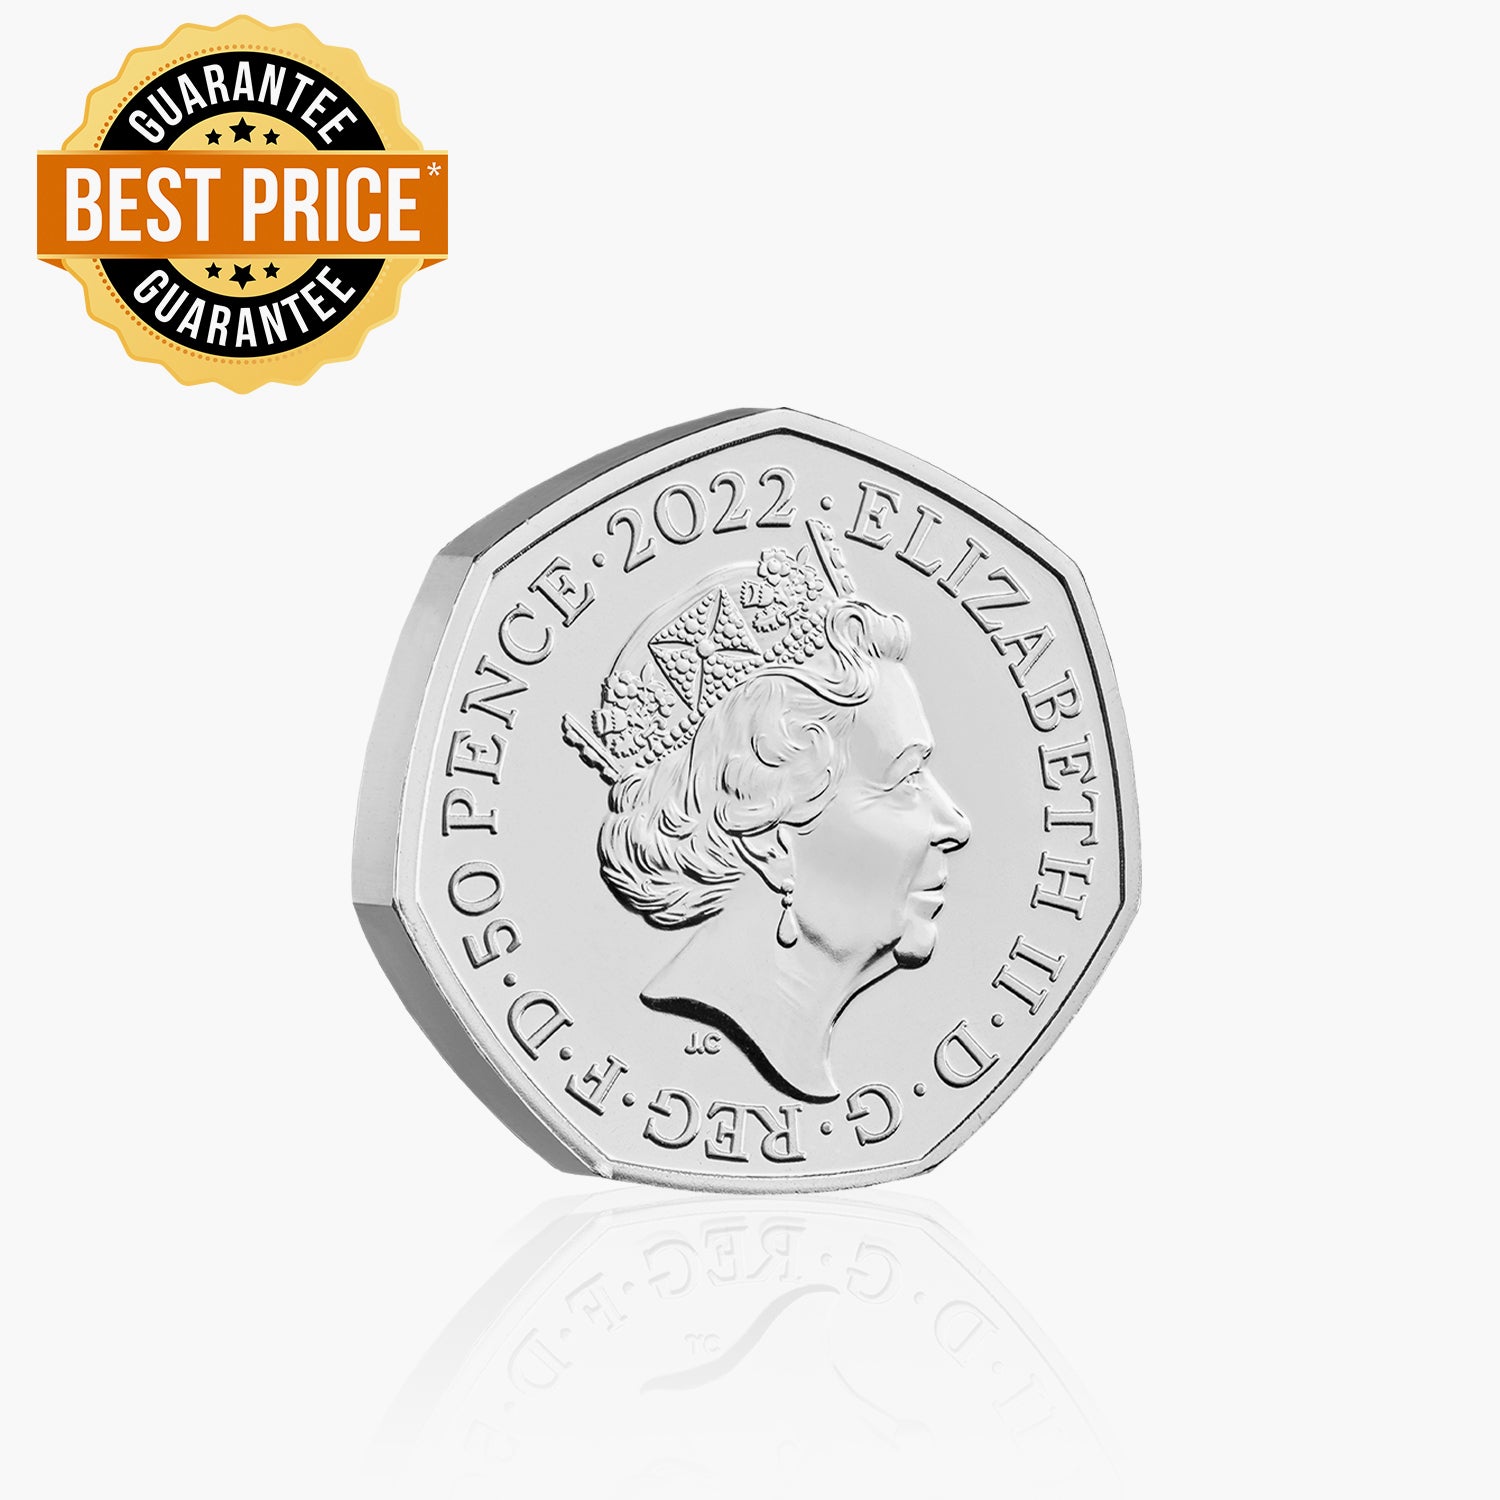 The Kanga & Roo 2022 UK 50p Coin